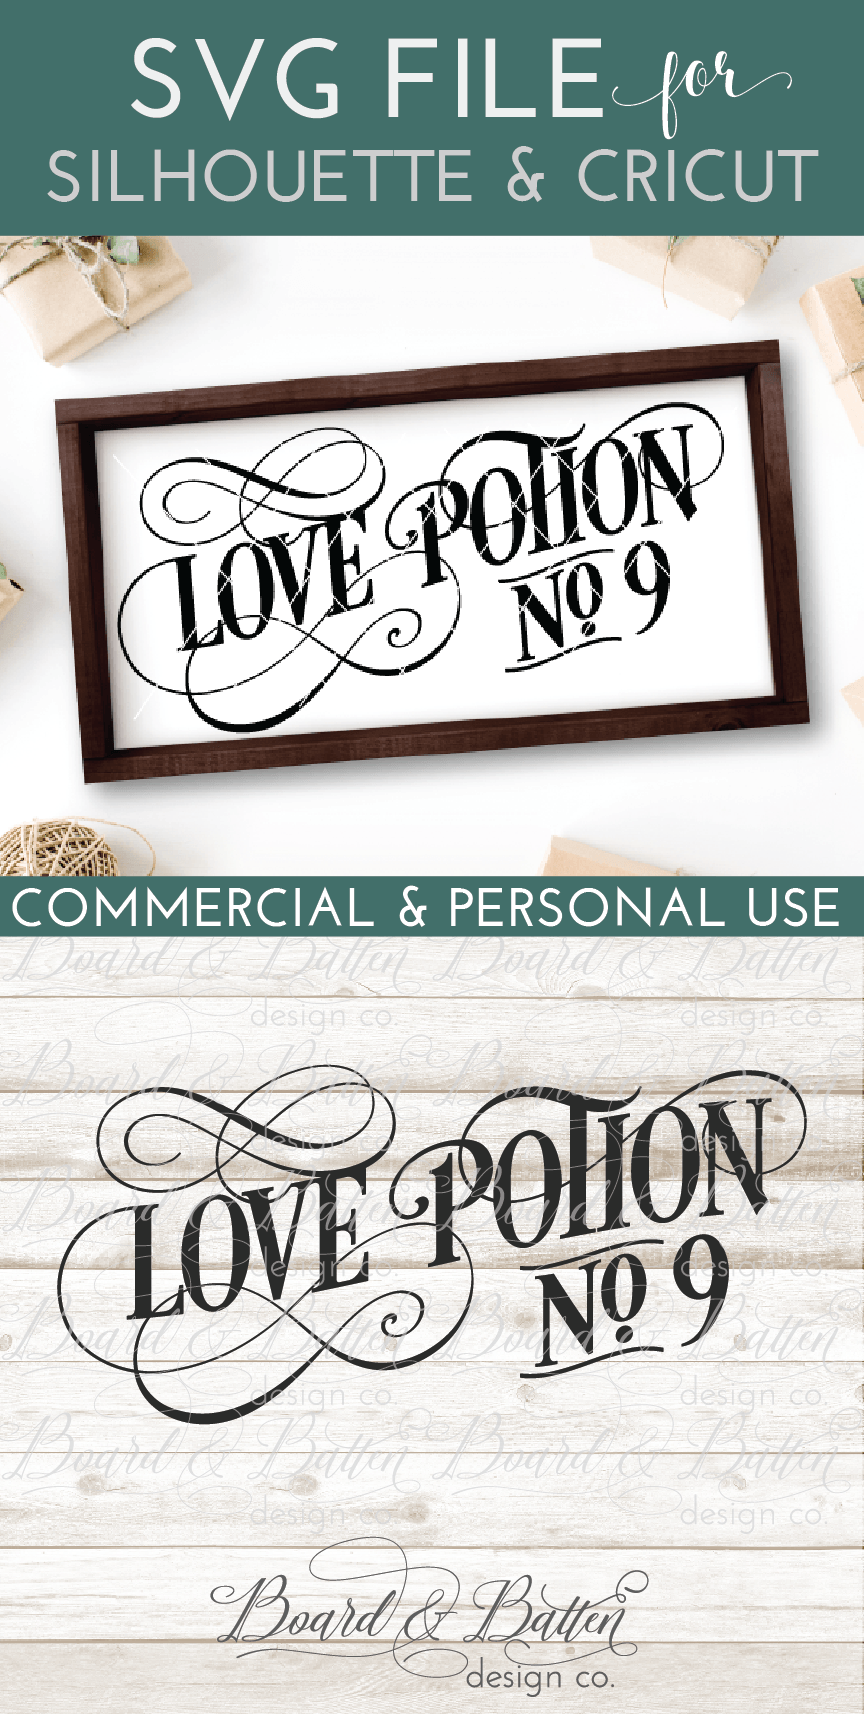 Download Love Potion No 9 Vintage Svg Board Batten Design Co